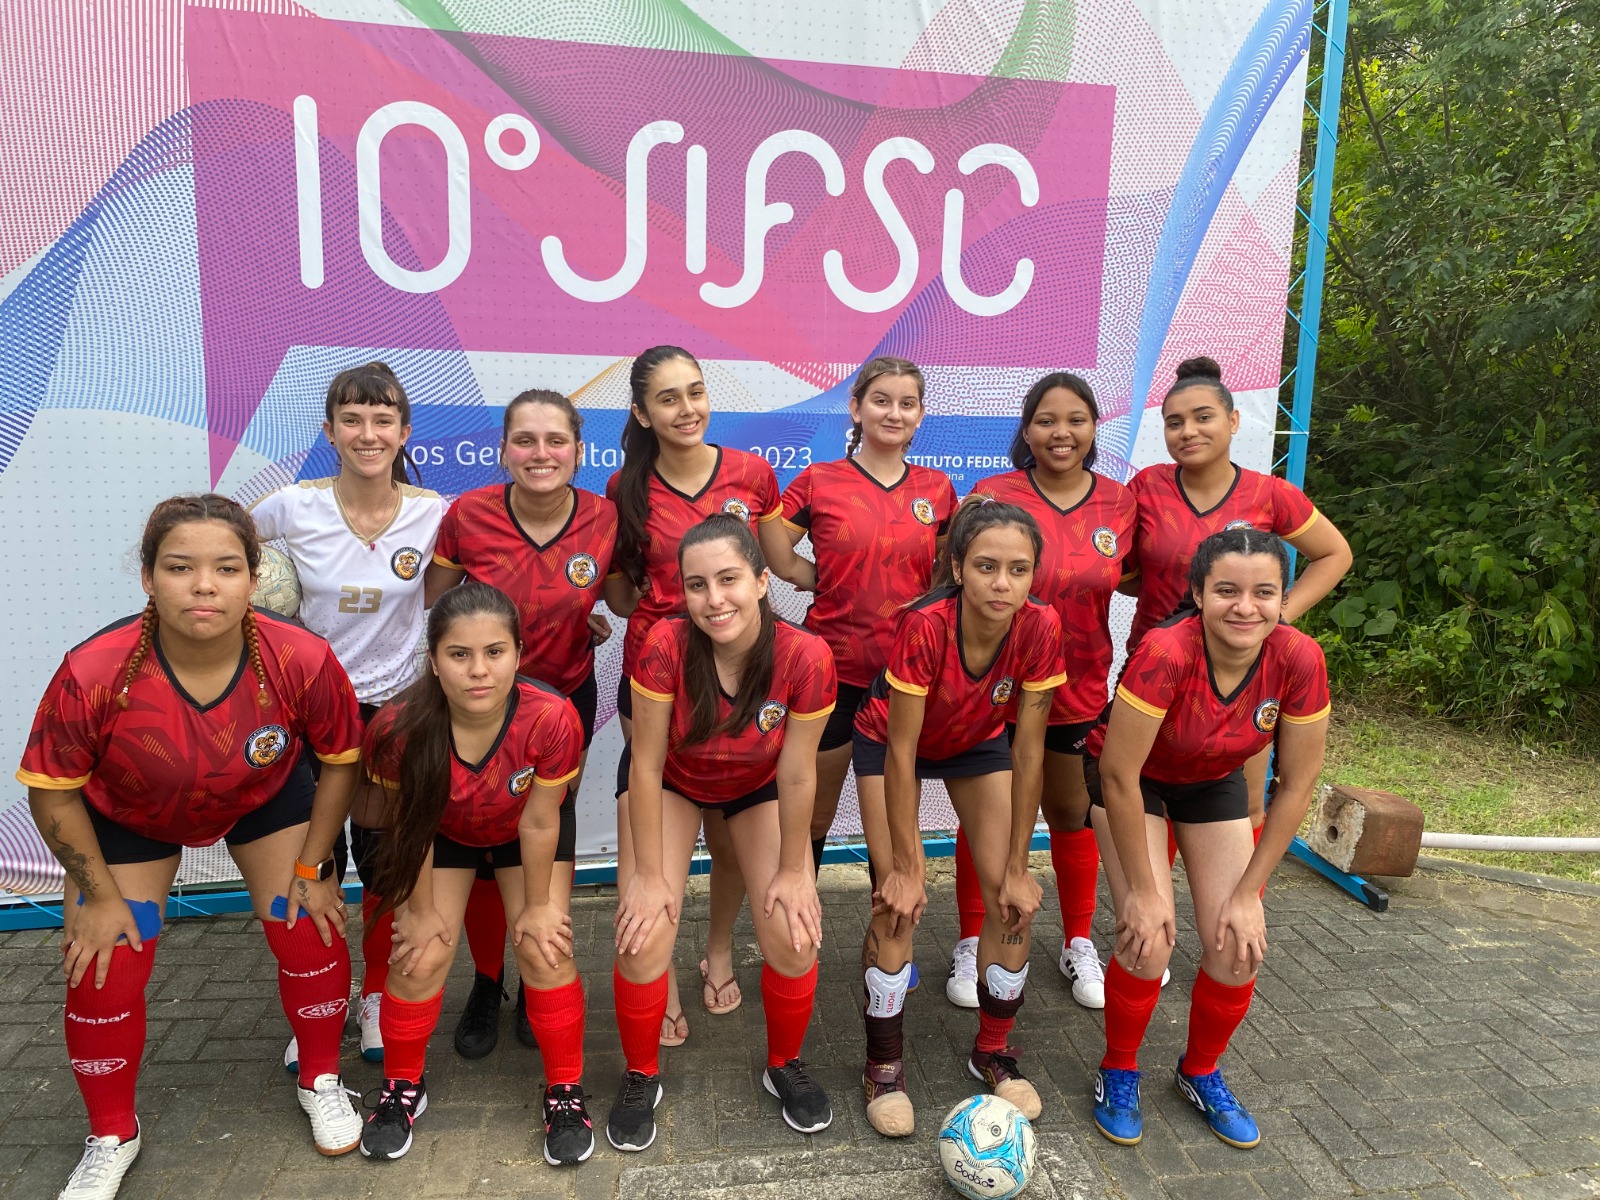 Time de futsal feminino montado pela Atlética do Câmpus Jaraguá do Sul-Rau especialmente para o JIFSC.